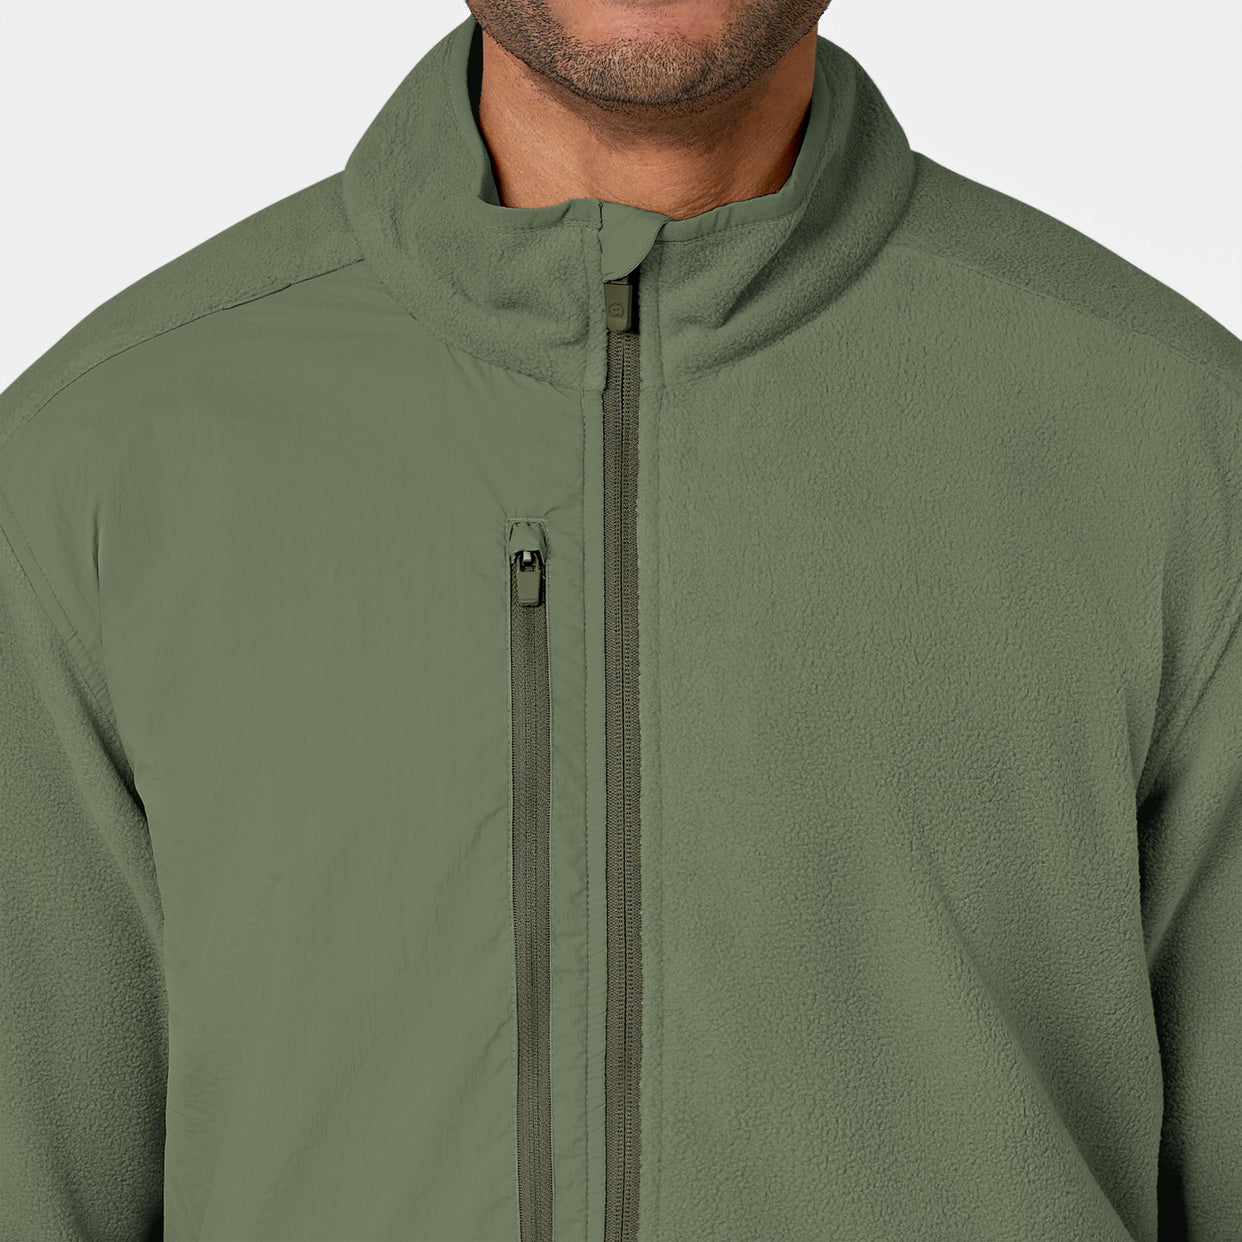 Slate Men's Micro Fleece Zip Jacket Olive front detail